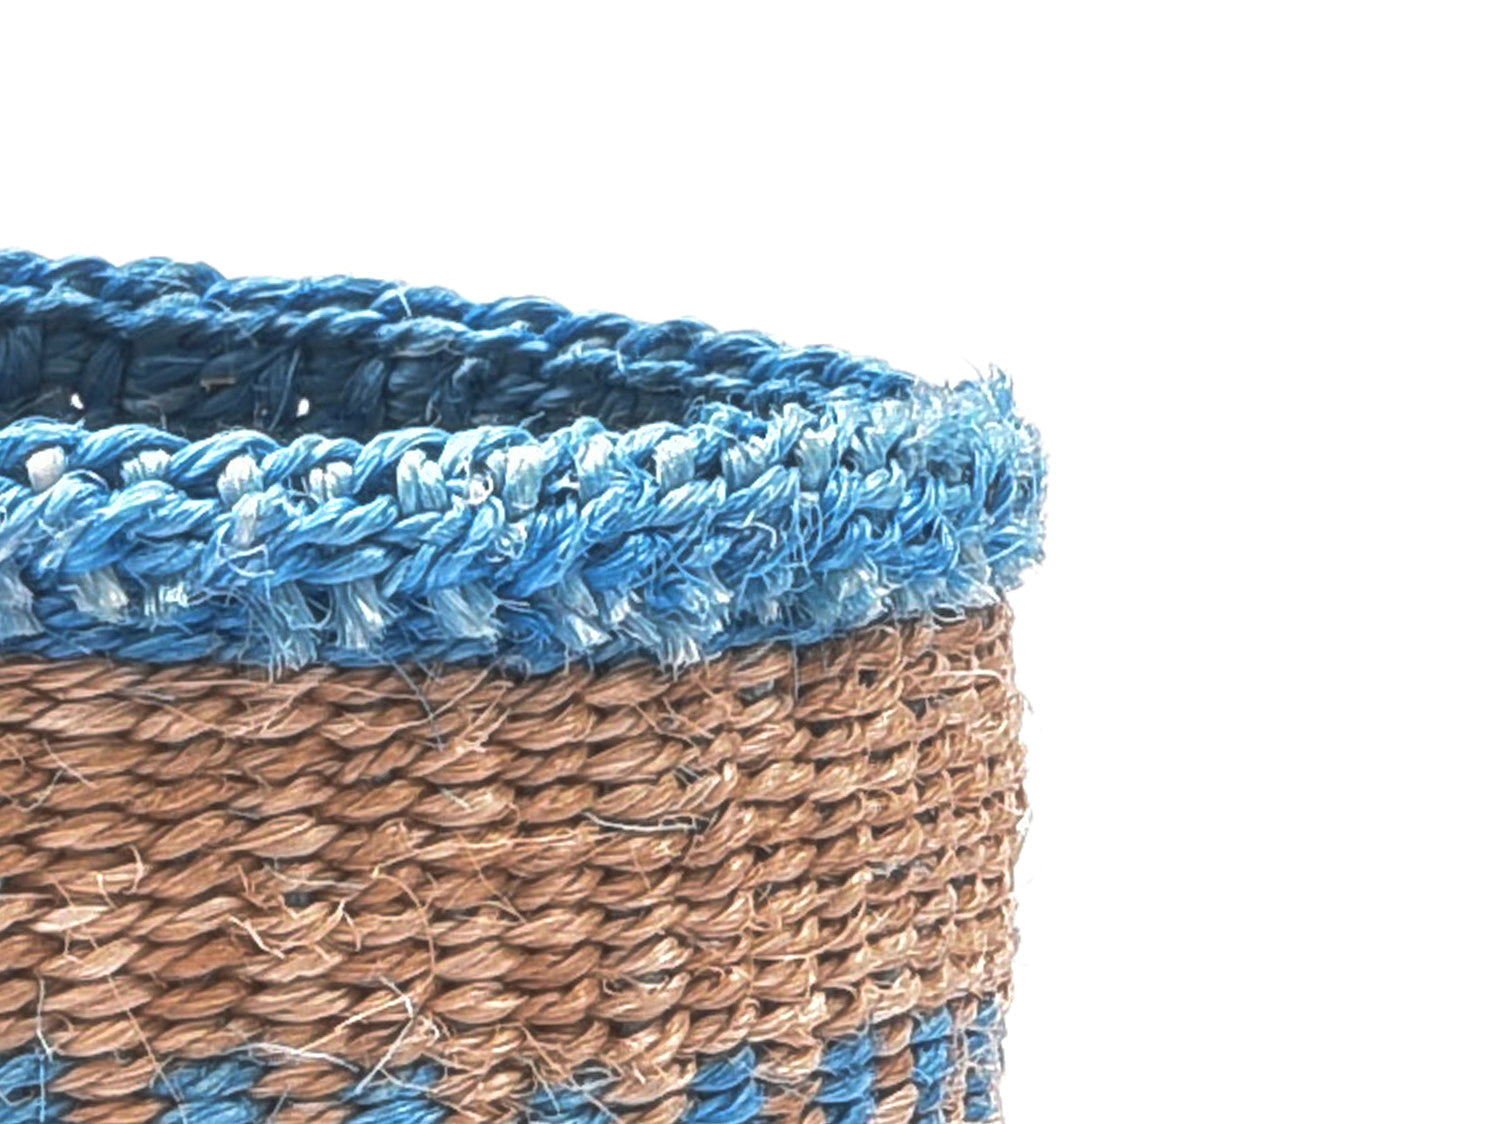 MZIMA Dusty blue stripe woven storage basket-Little Fish Co.